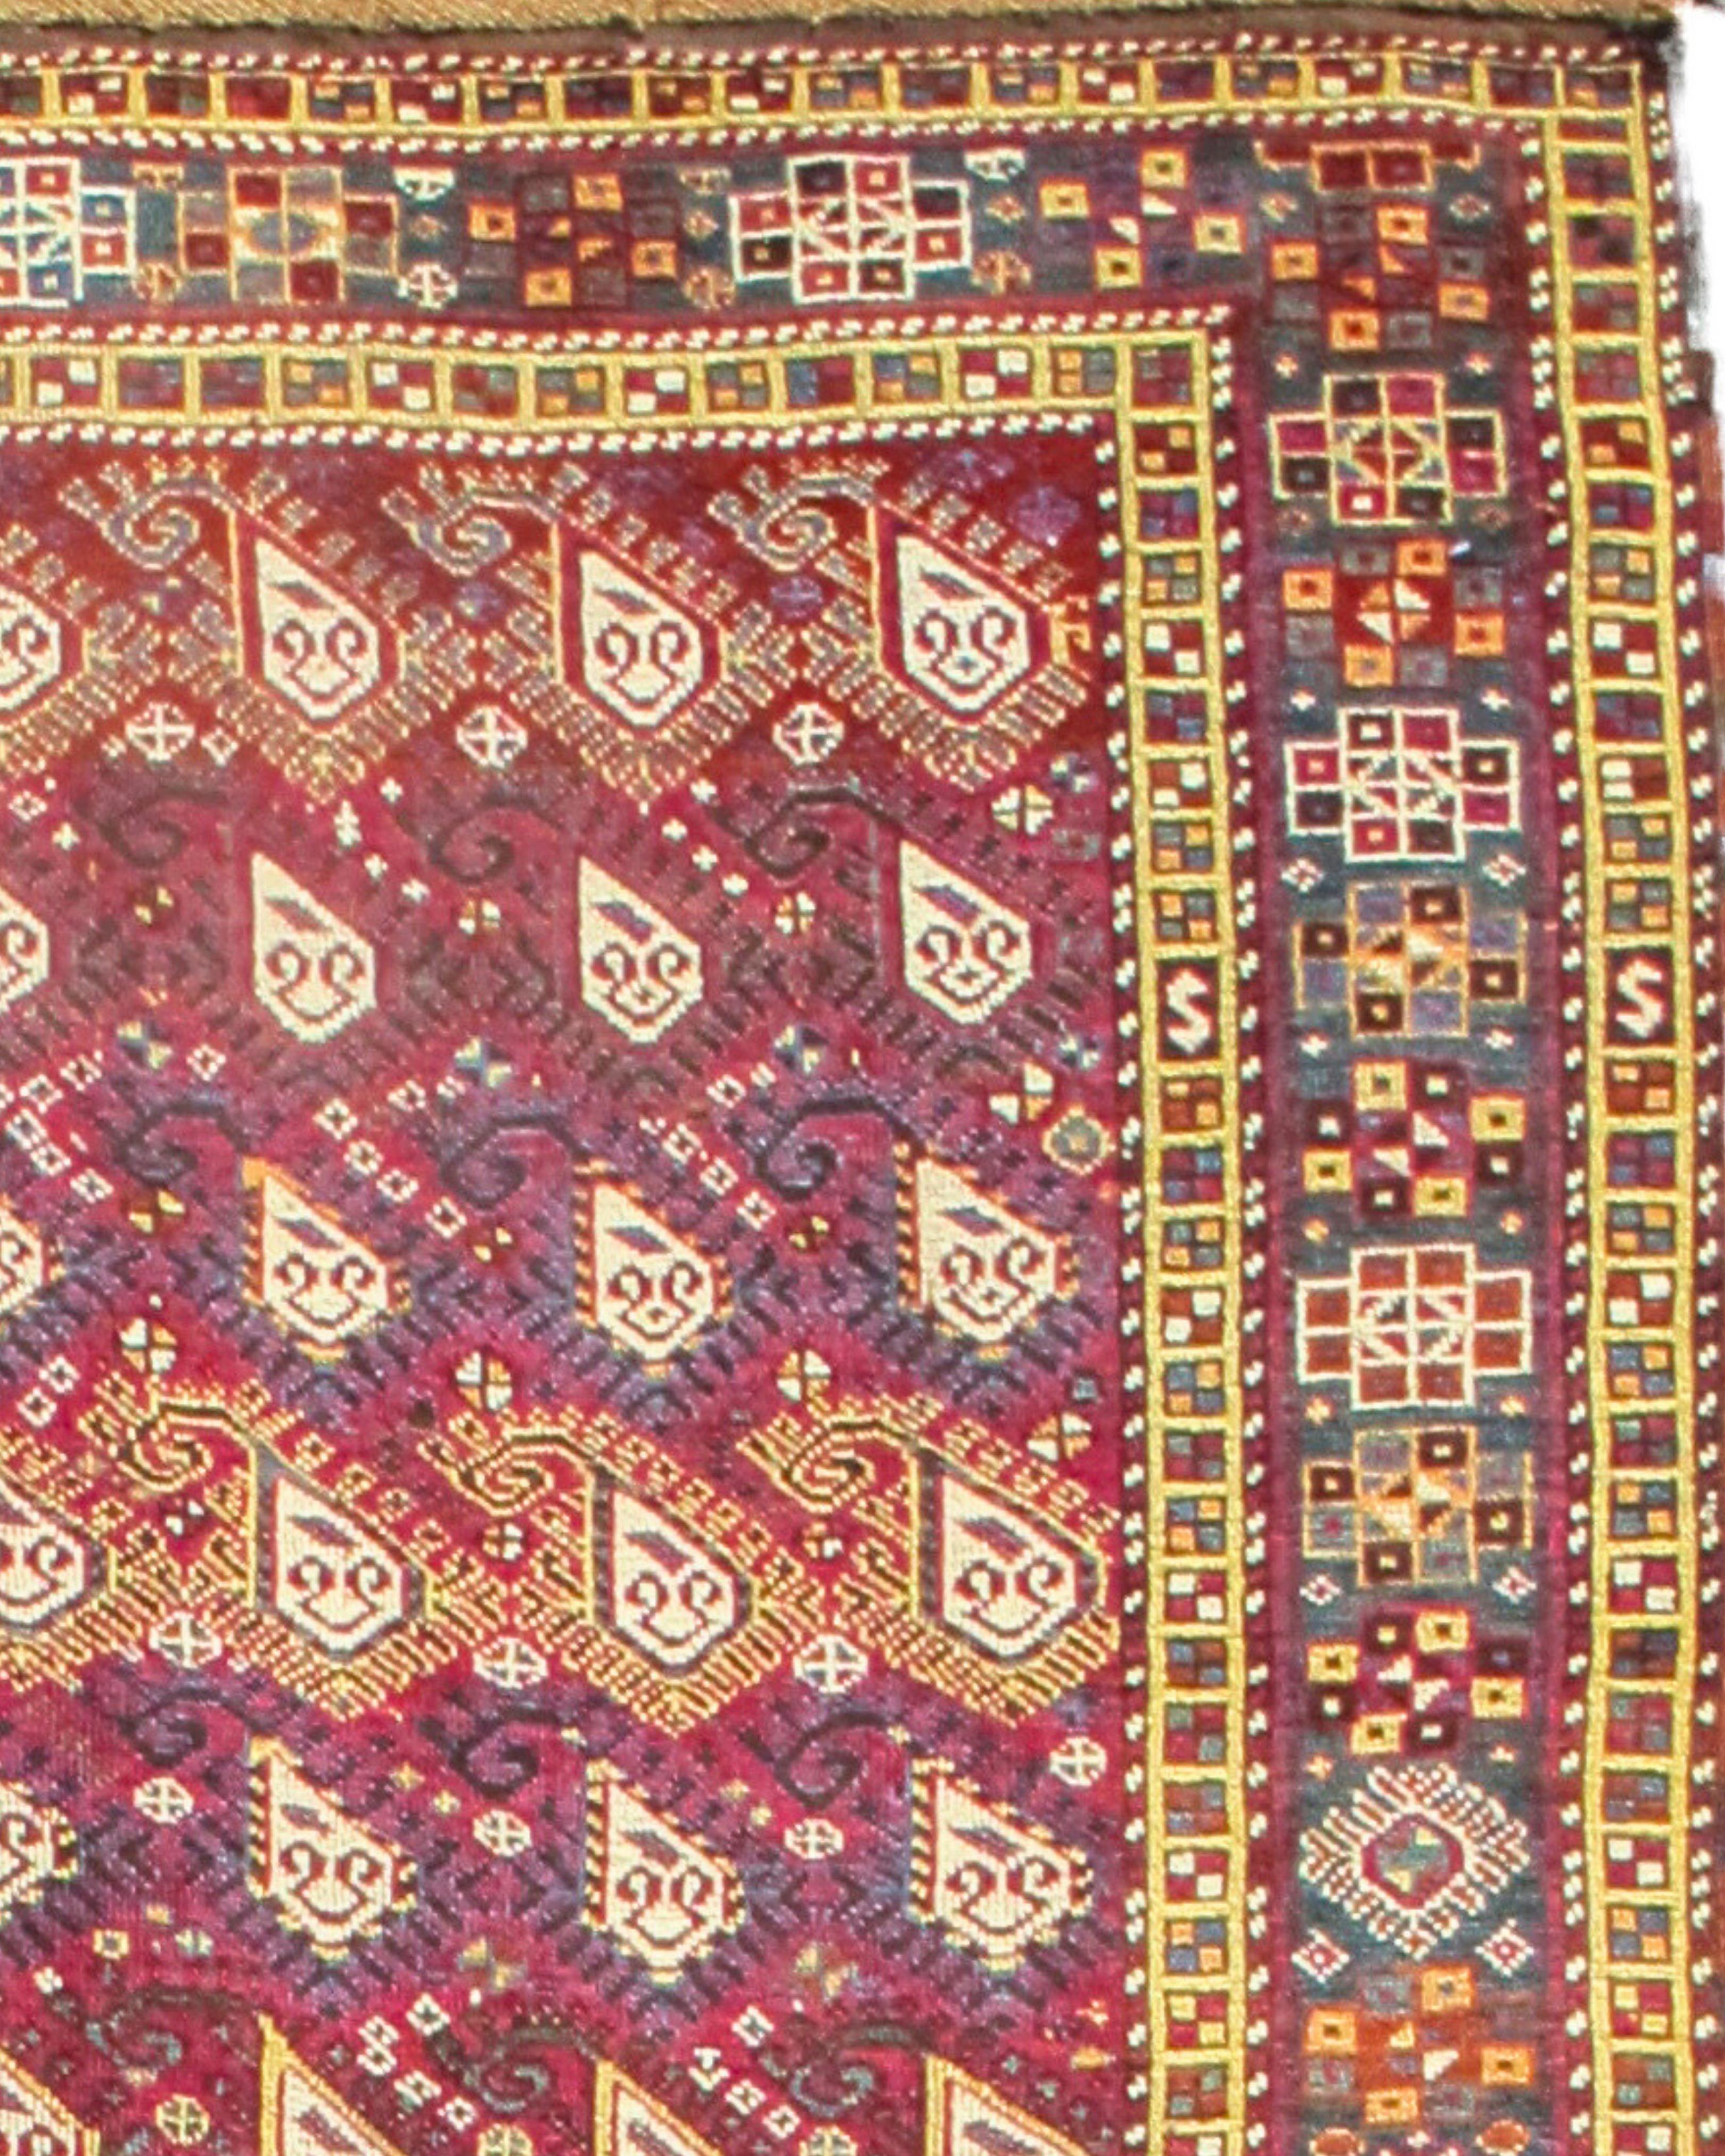 Ancien tapis de course turc d'Anatolie centrale, fin du 19e siècle

Informations supplémentaires :
Dimensions : 8'10